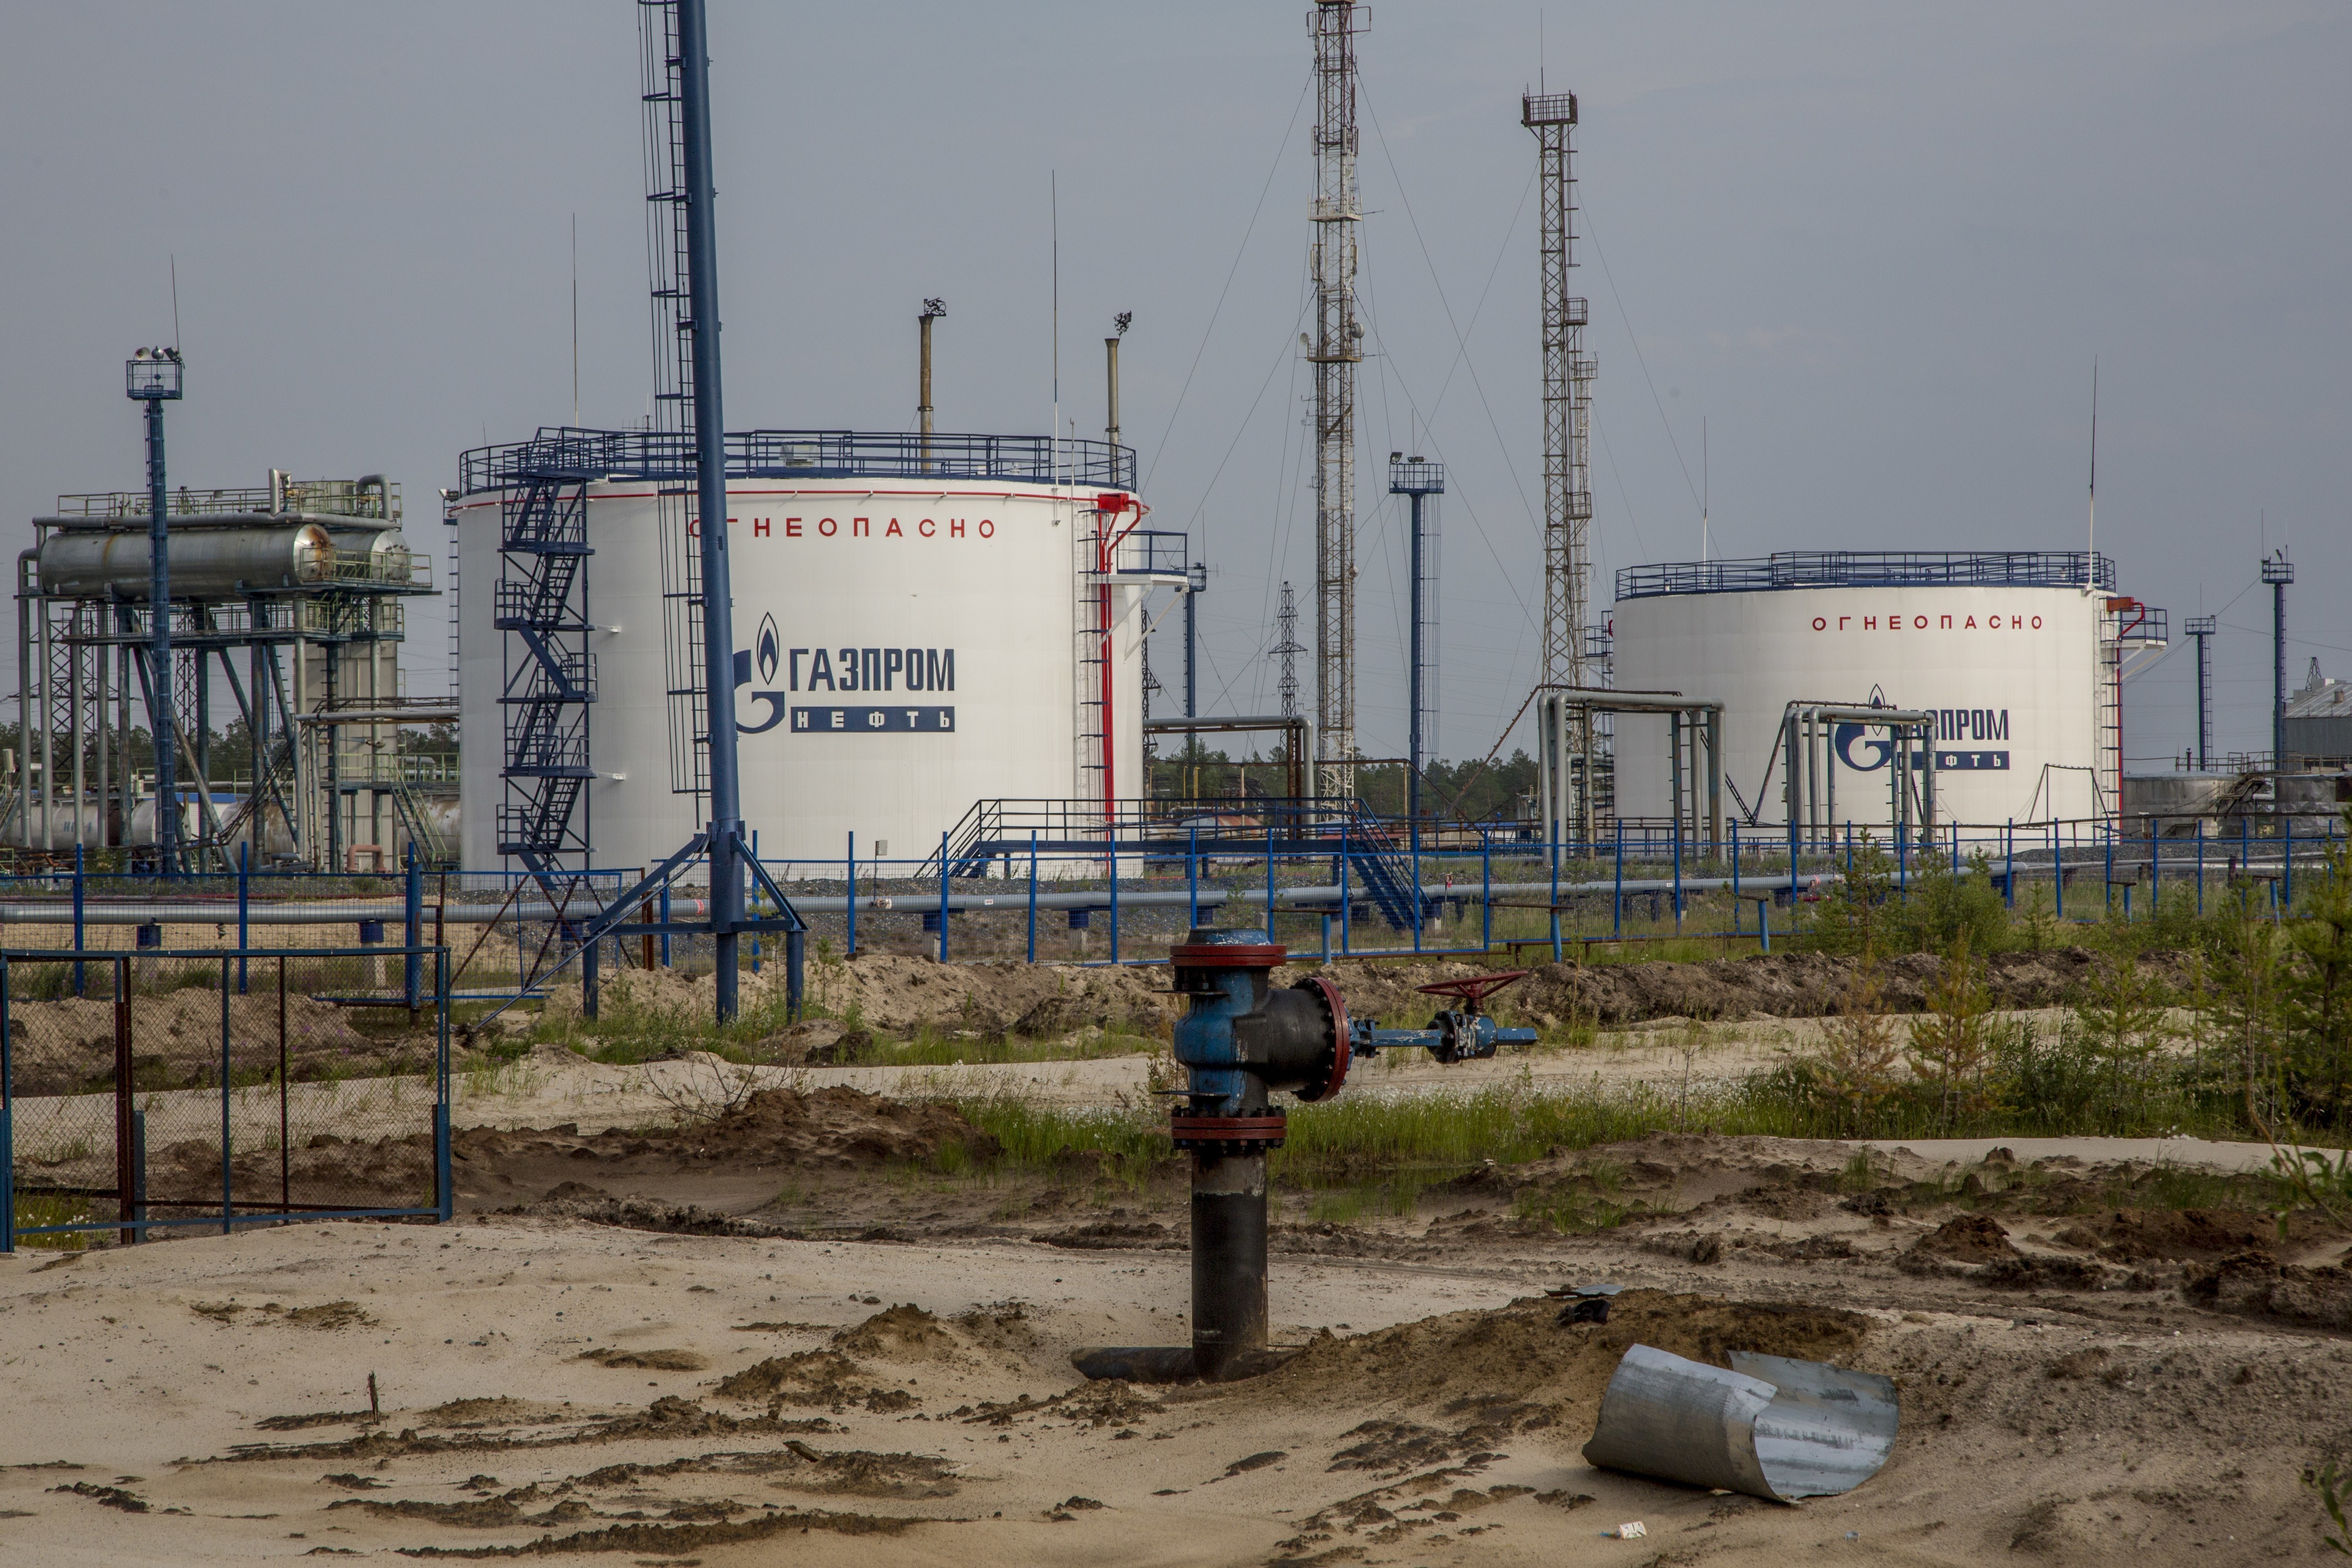 A Gazprom rekordmennyiségű földgázt exportált Európába az idén 